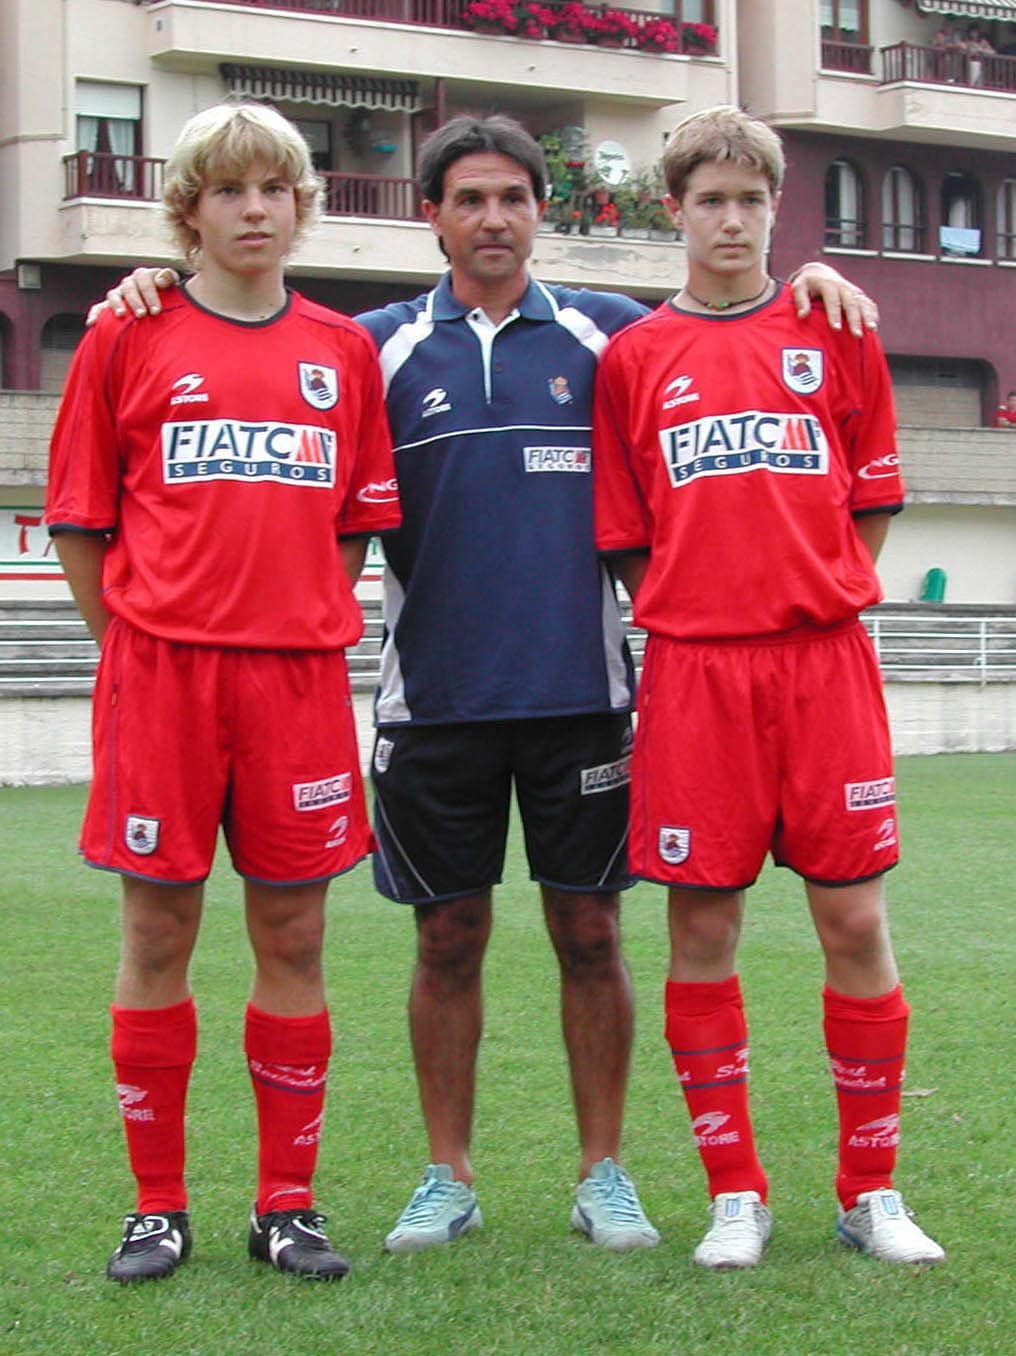 Asier Illarramendi, Luziano Iturrino yJoseba Beitia el 4 de septiembre de 2005 en San Miguel, día en el que vencieron por 2 a 0 al Burumendi.